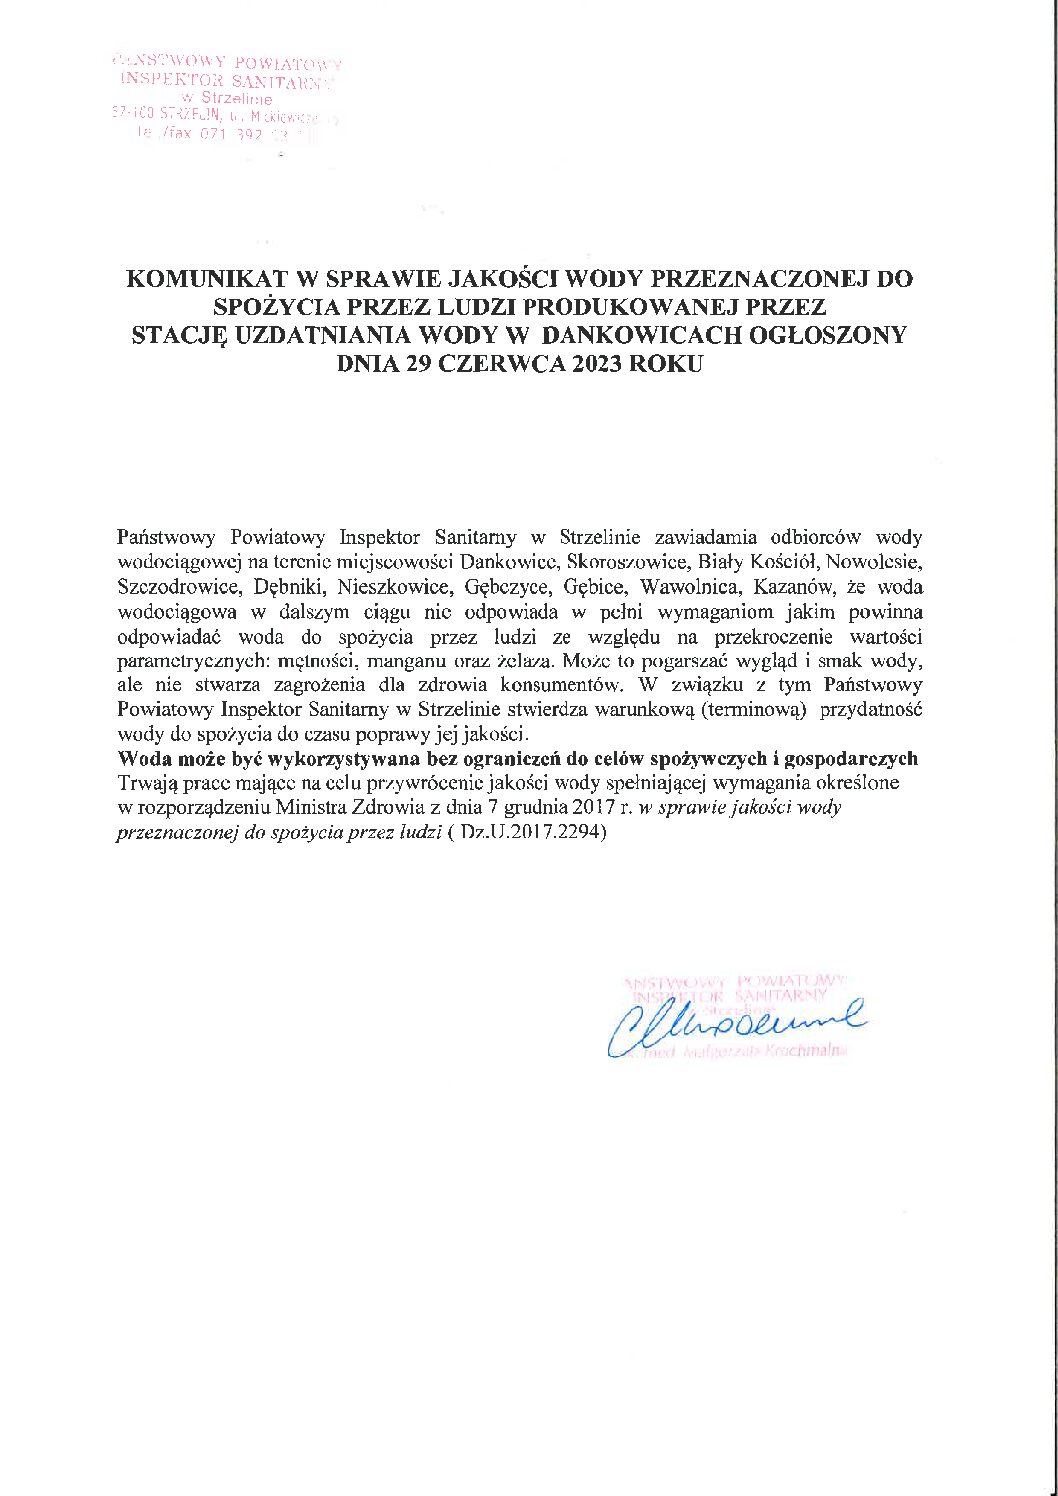 Komunikat w sprawie jakości wody przeznaczonej do spożycia przez ludzi produkowanej przez stację uzdatniania wody w Dankowicach ogłoszony dnia 29 czerwca 2023 roku